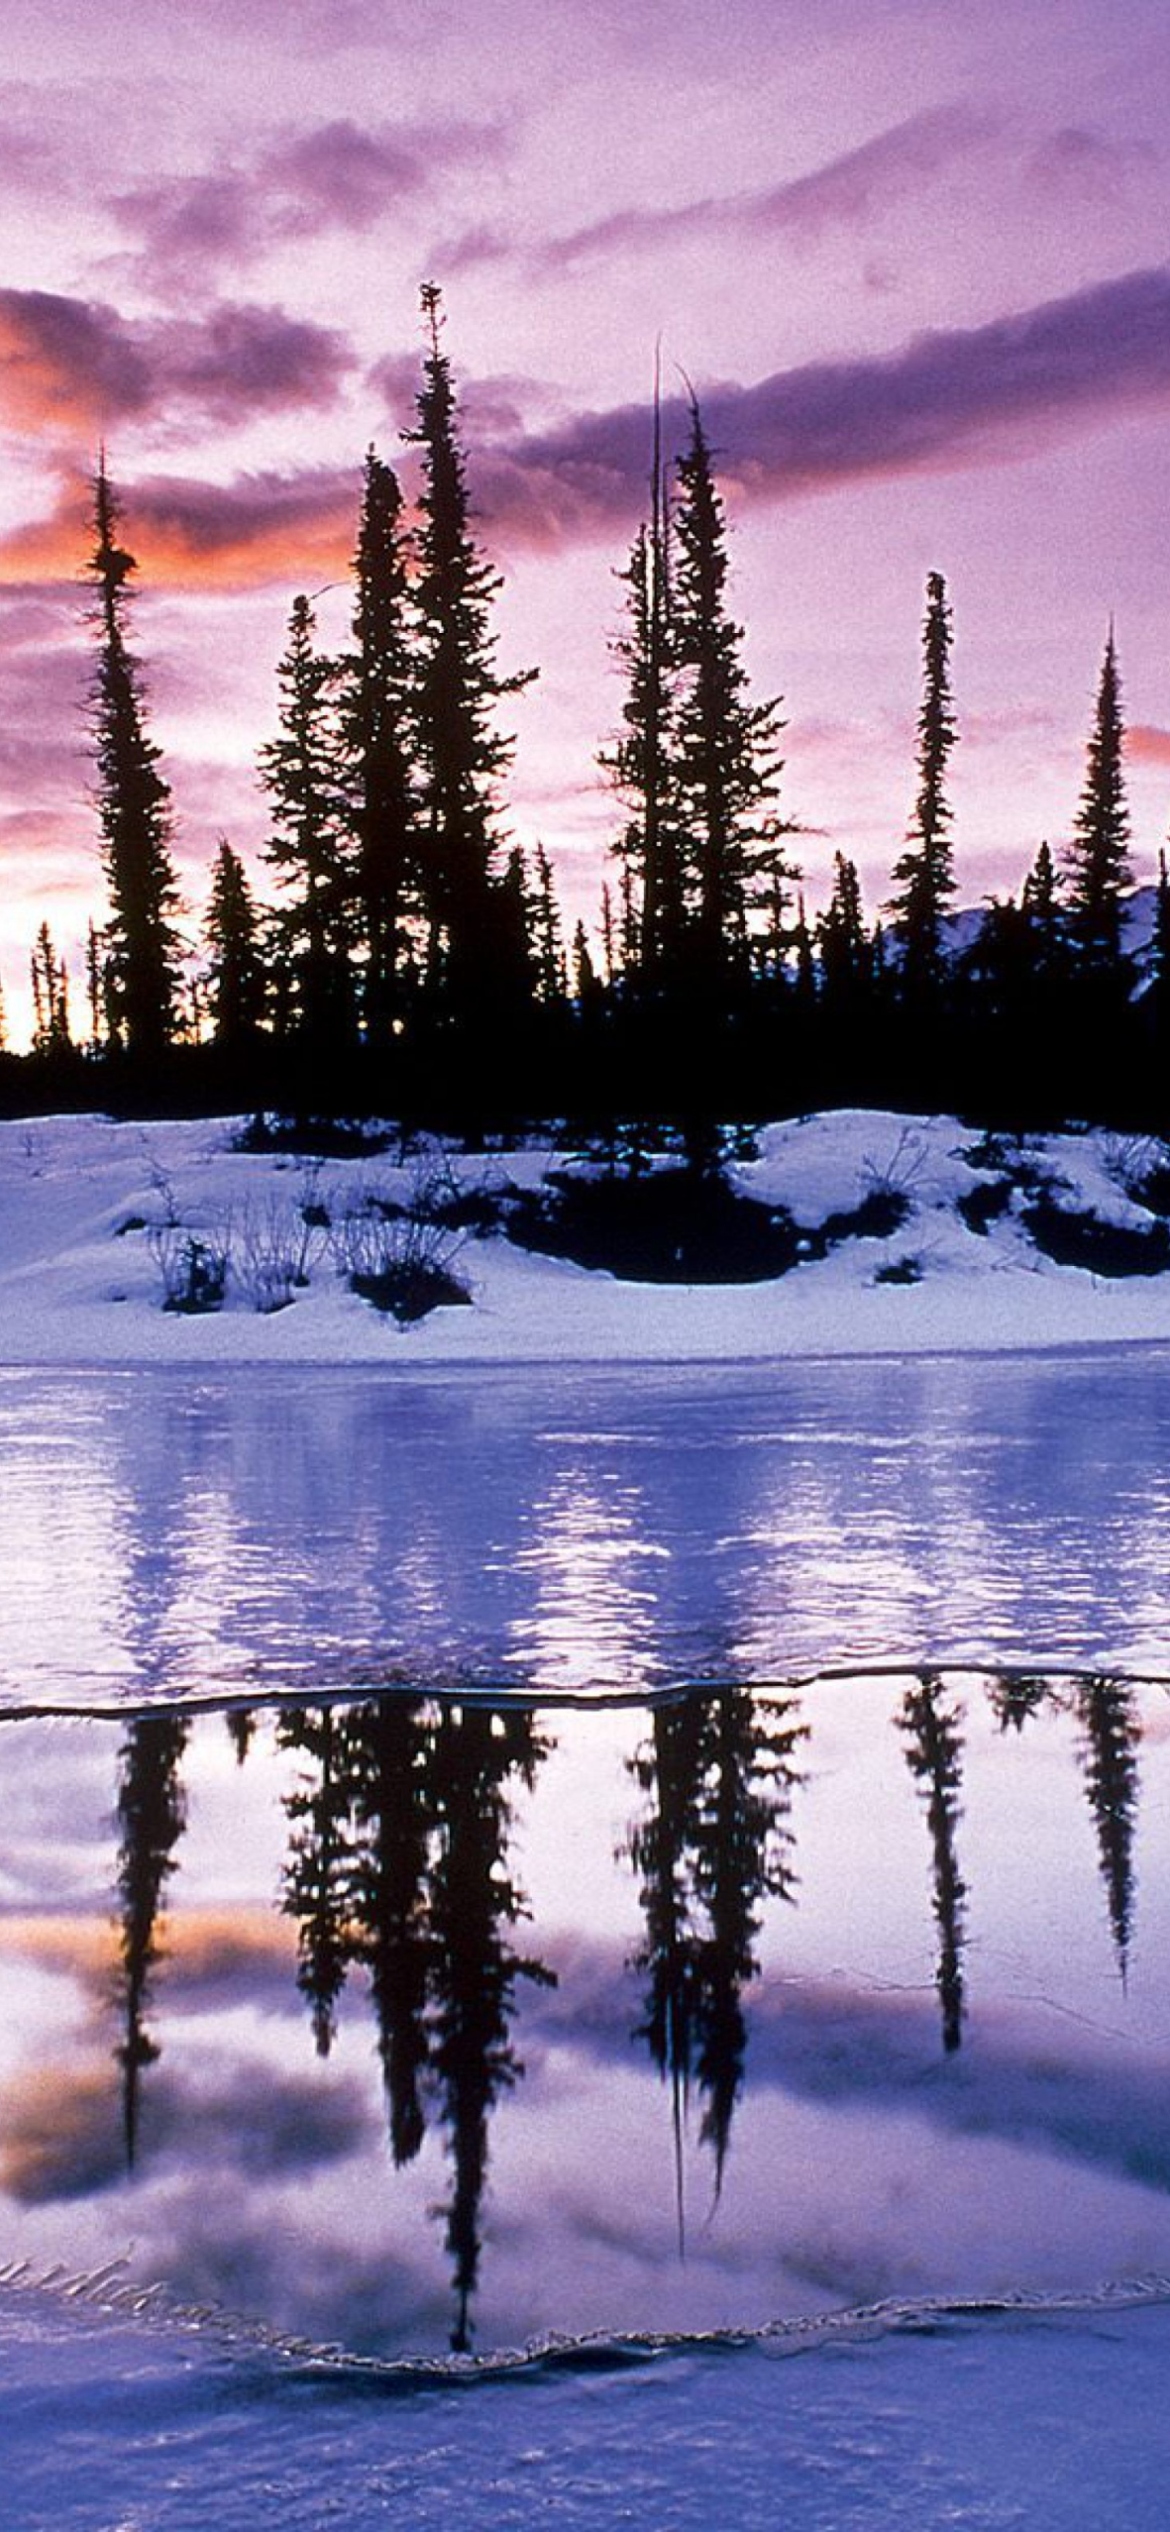 Winter Evening Landscape wallpaper 1170x2532